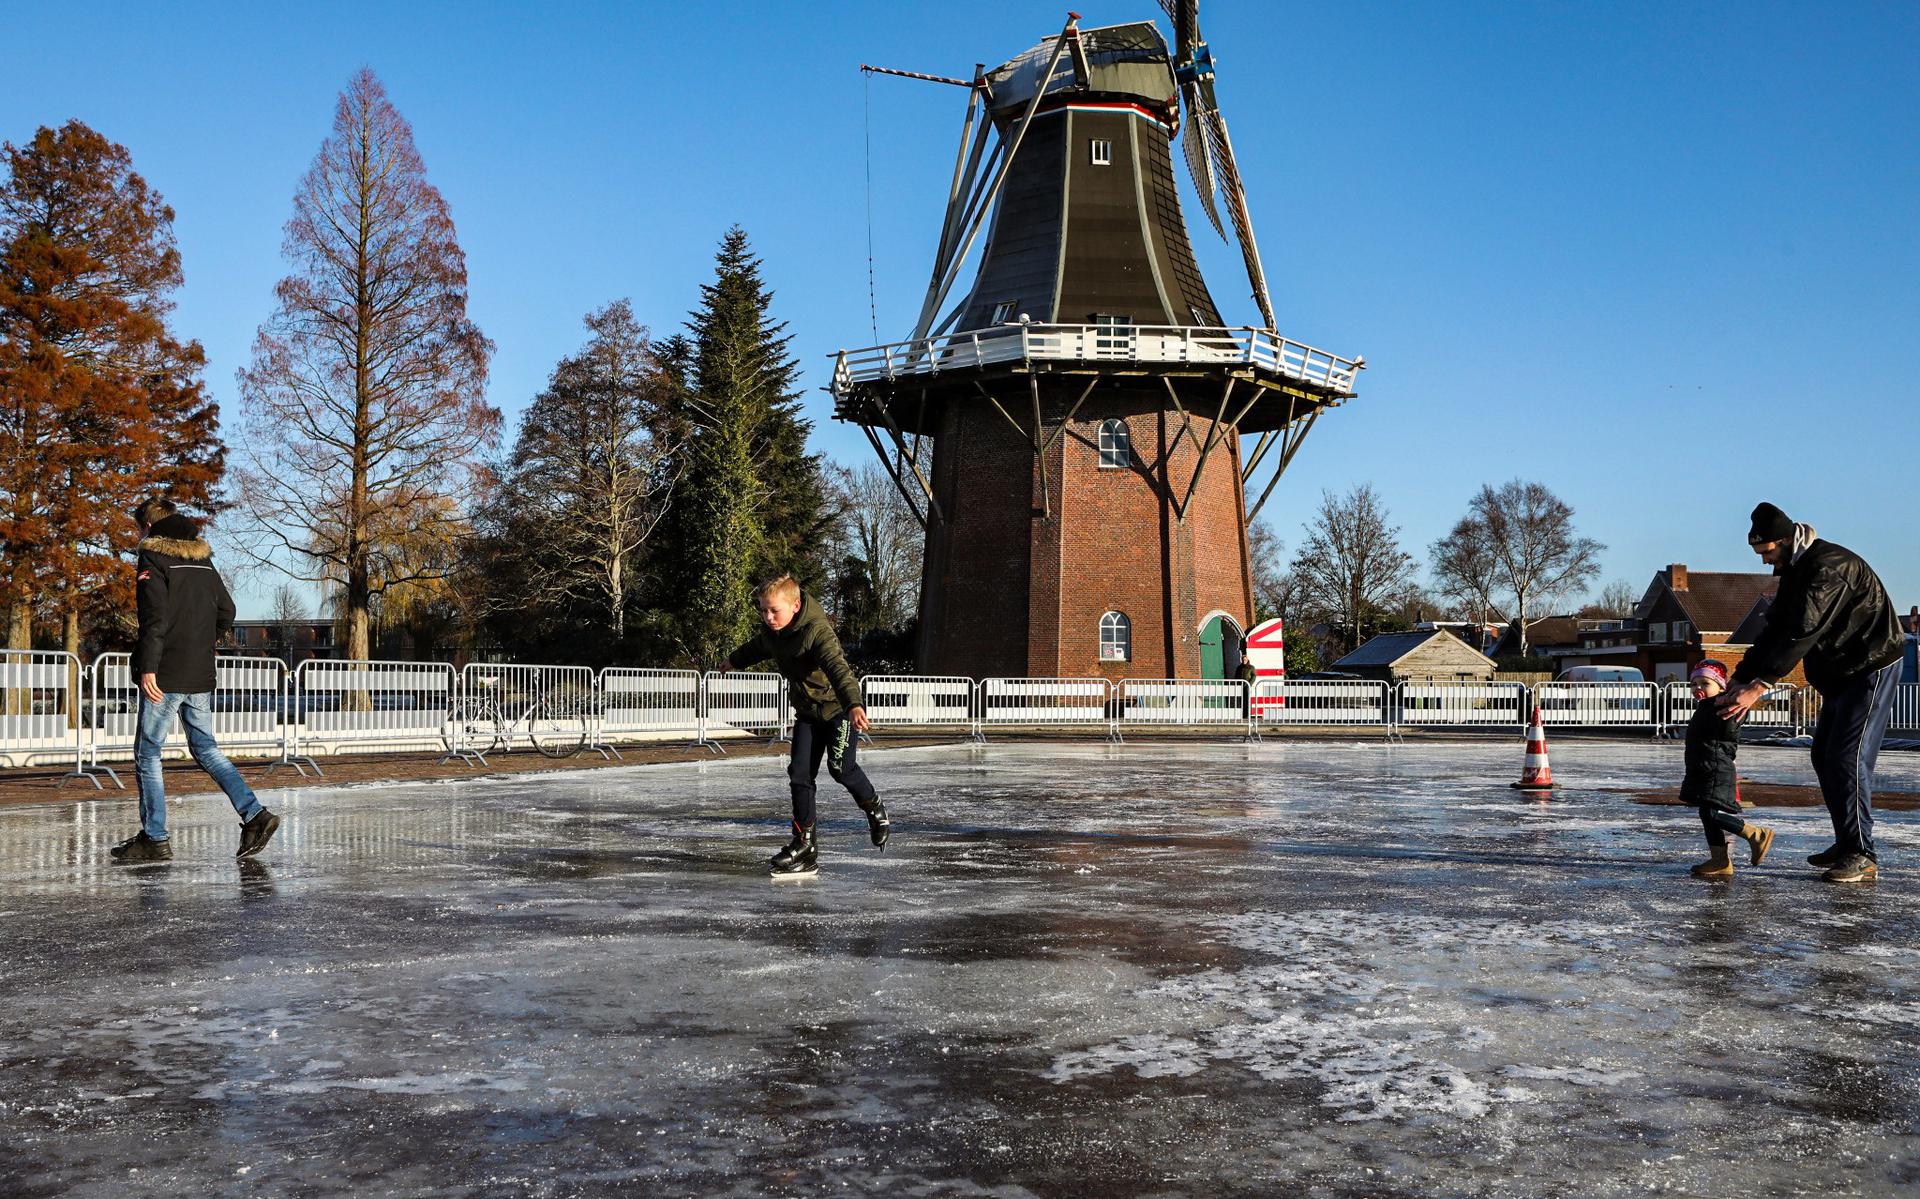 Pekela rijdt scheve schaats met aanleg ijsbaan op Raadhuisplein in Pekela want niet waterpas - Dagblad van het Noorden